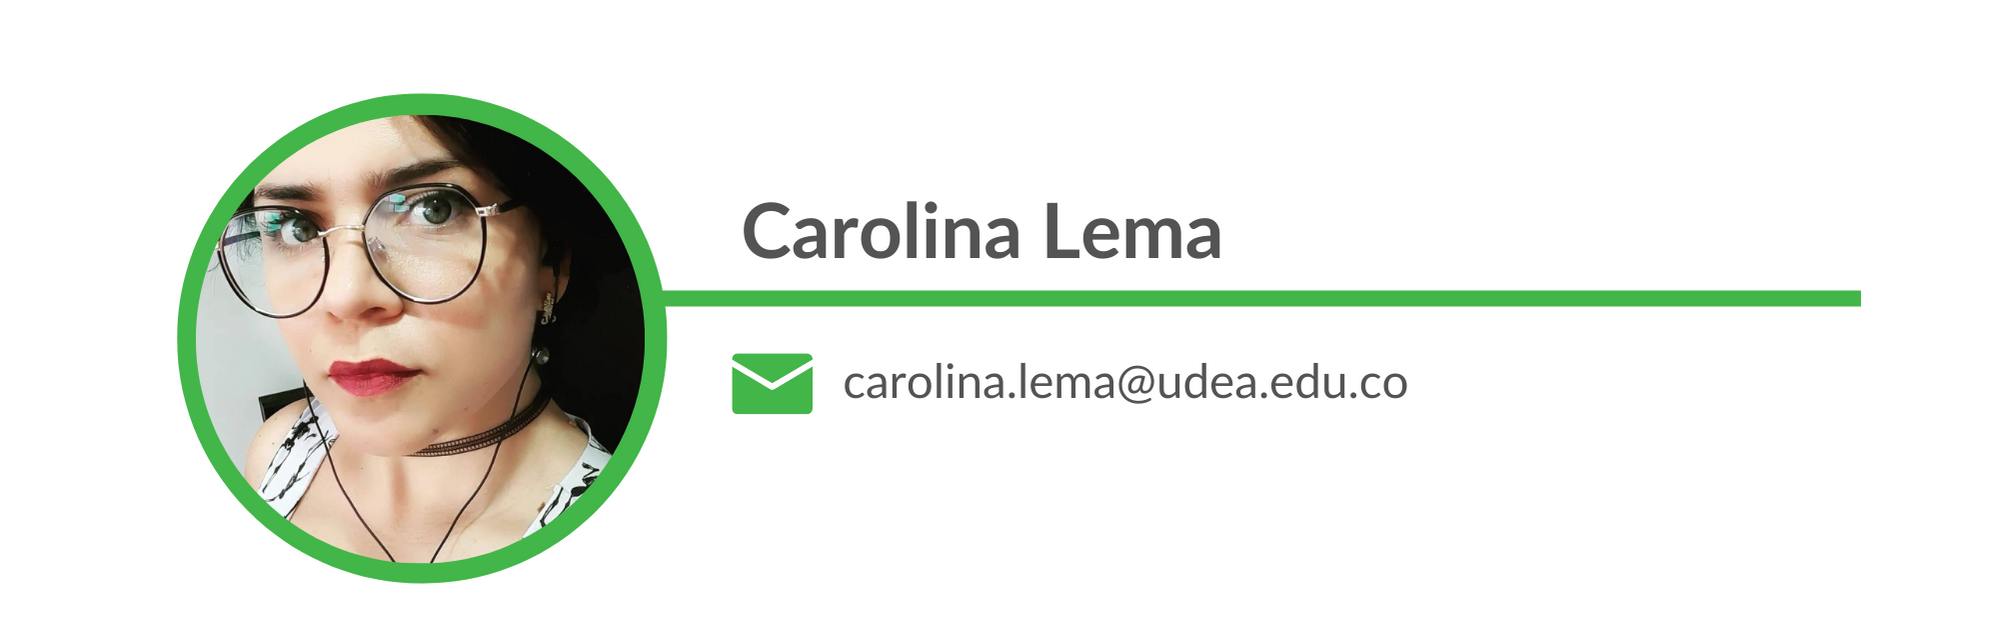 Carolina Lema. Email: carolina.lema@udea.edu.co